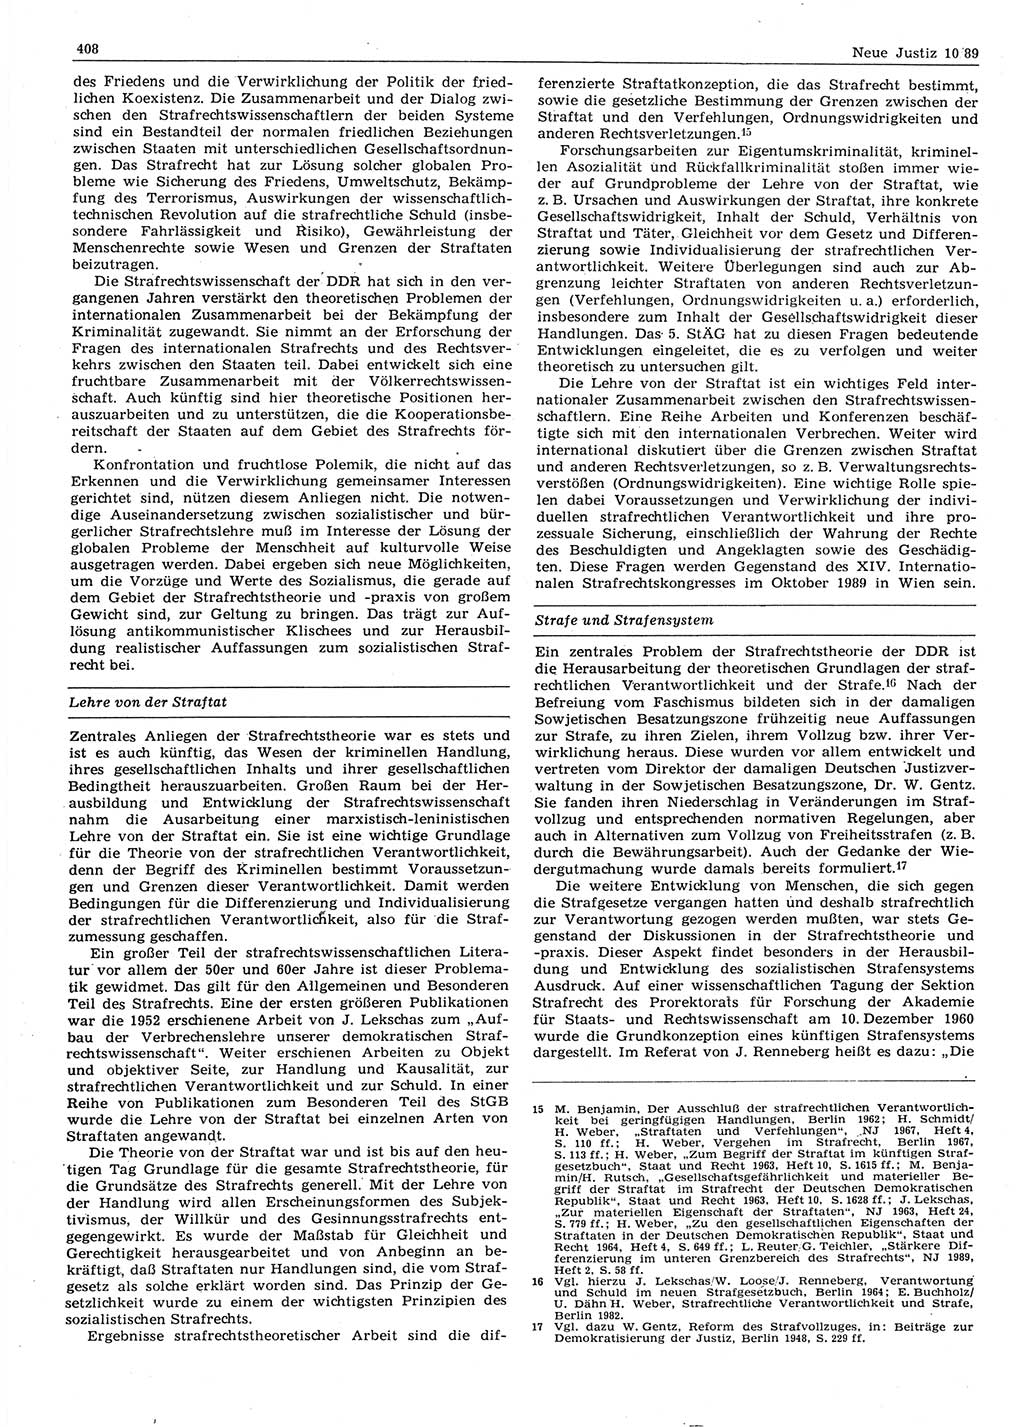 Neue Justiz (NJ), Zeitschrift für sozialistisches Recht und Gesetzlichkeit [Deutsche Demokratische Republik (DDR)], 43. Jahrgang 1989, Seite 408 (NJ DDR 1989, S. 408)